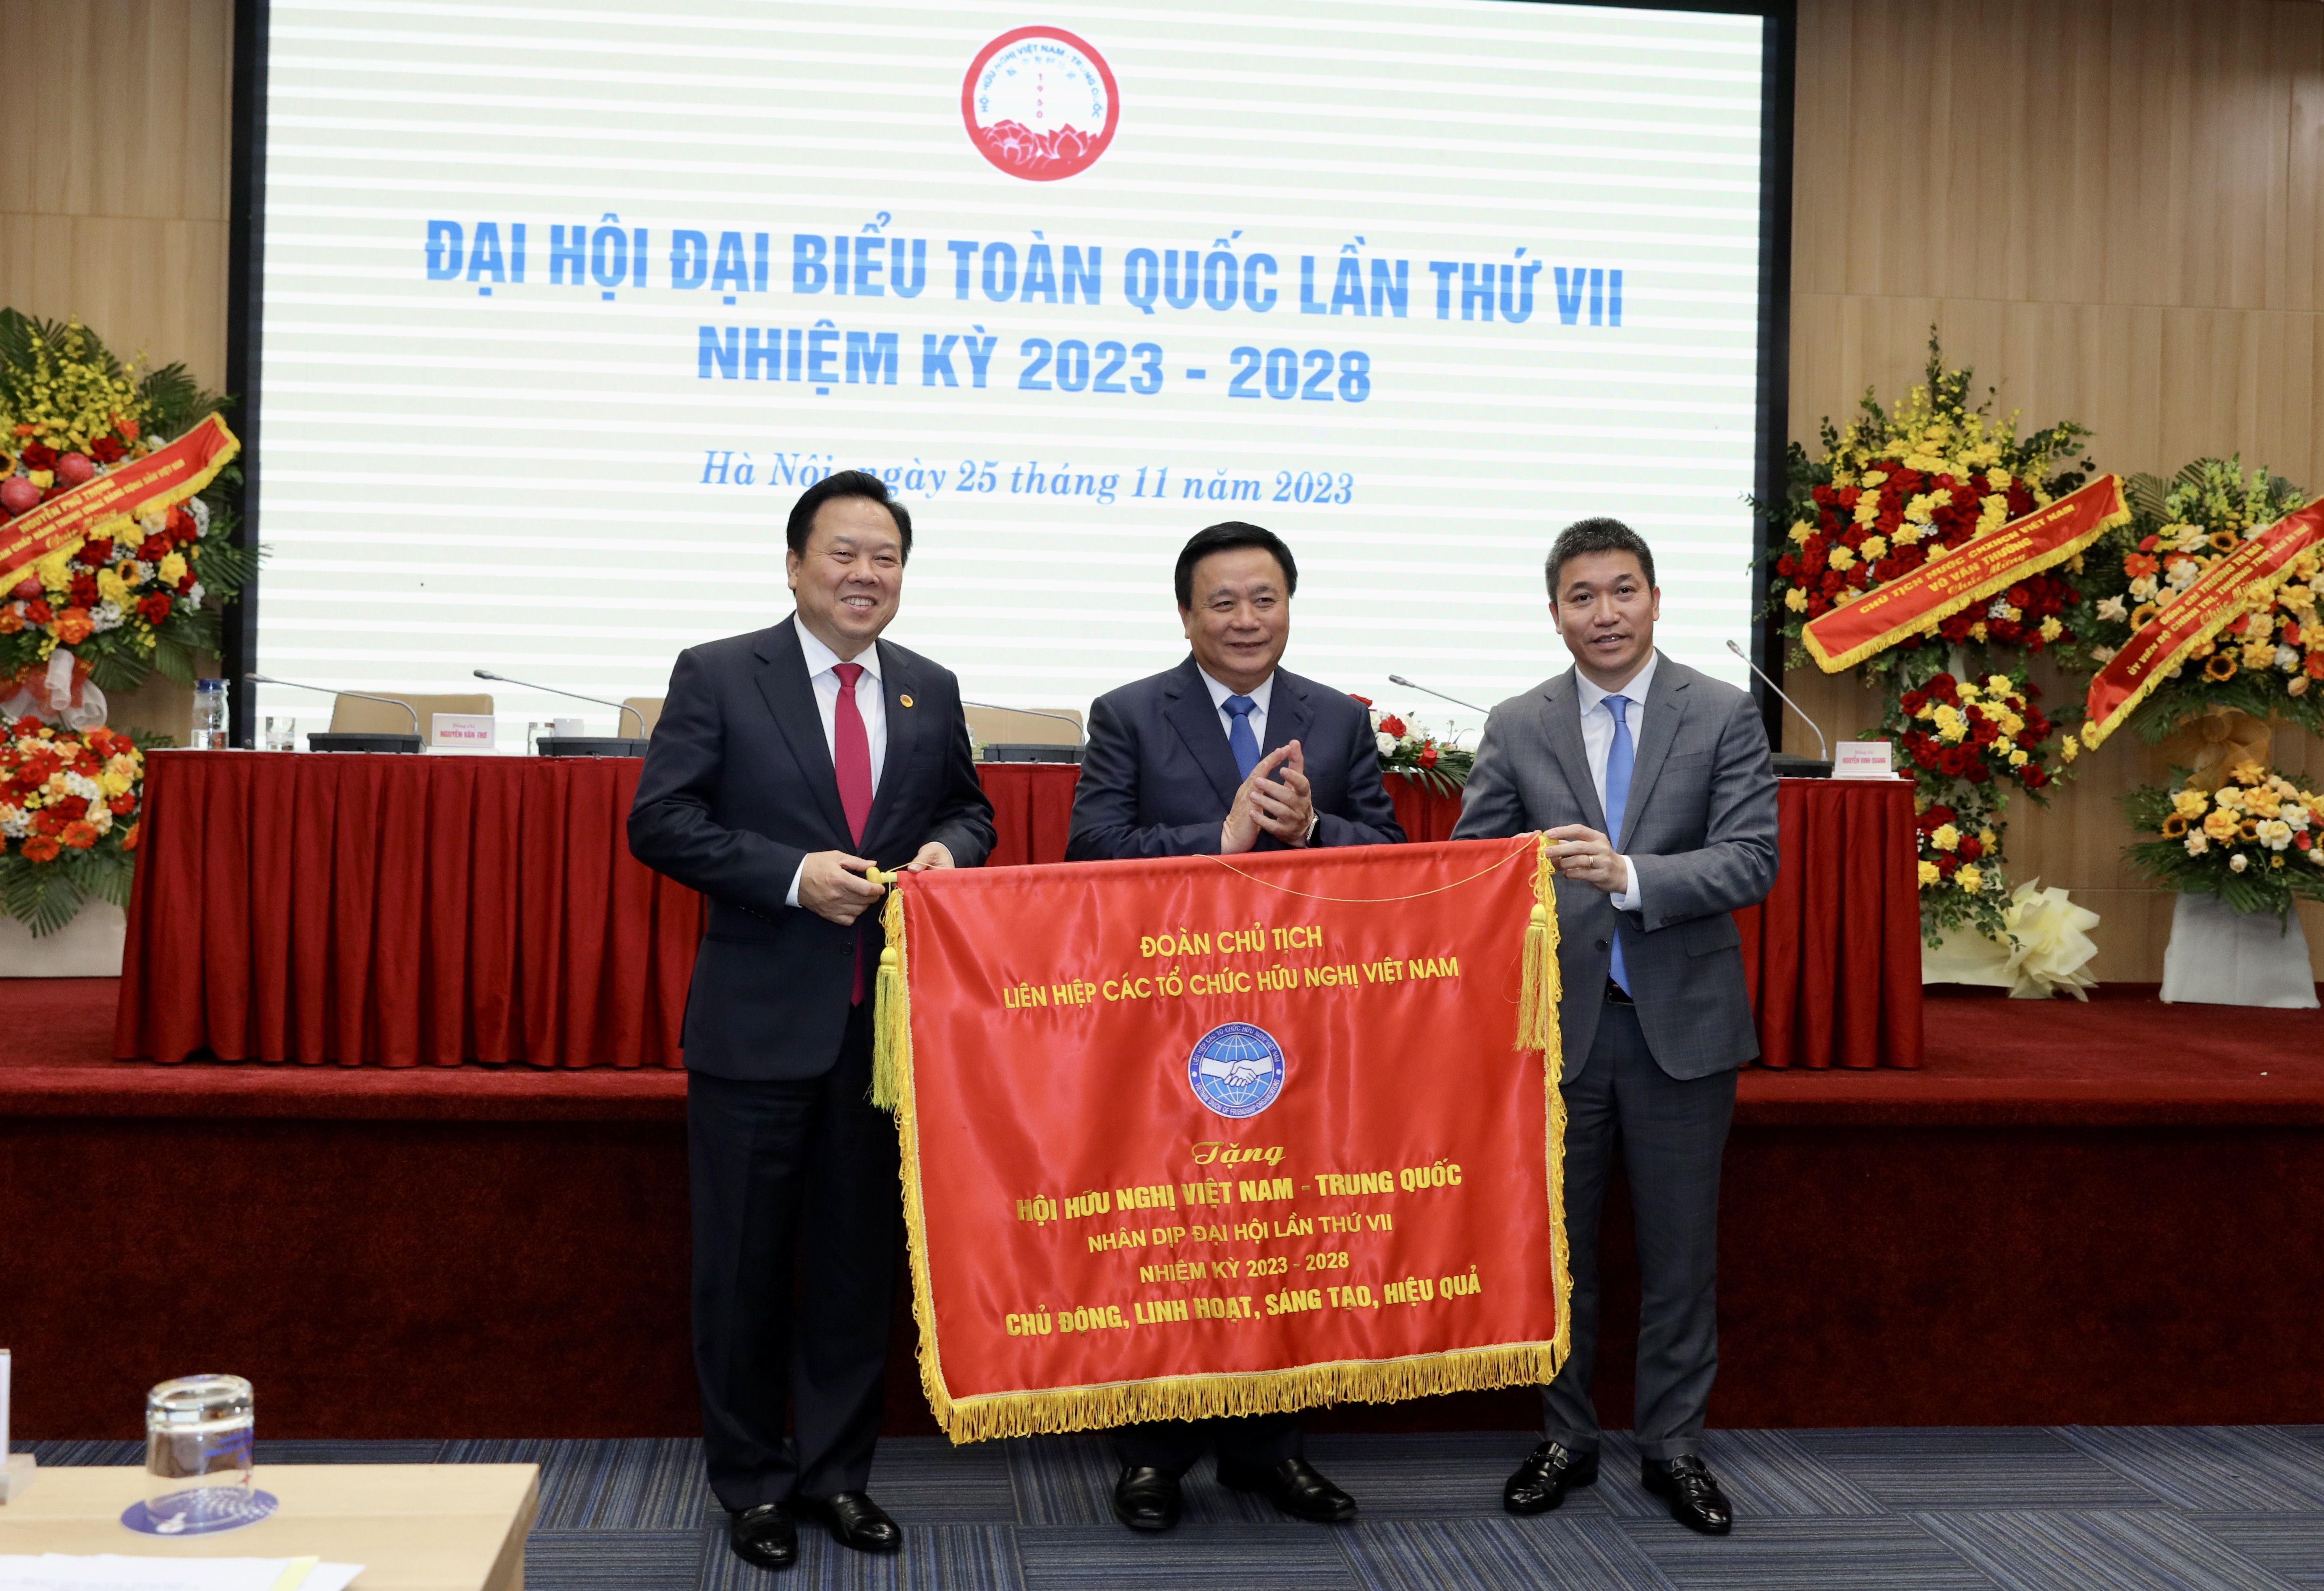 Chủ tịch Liên hiệp các tổ chức hữu nghị Việt Nam Phan Anh Sơn đã trao Cờ lưu niệm cho Hội hữu nghị Việt Nam - Trung Quốc